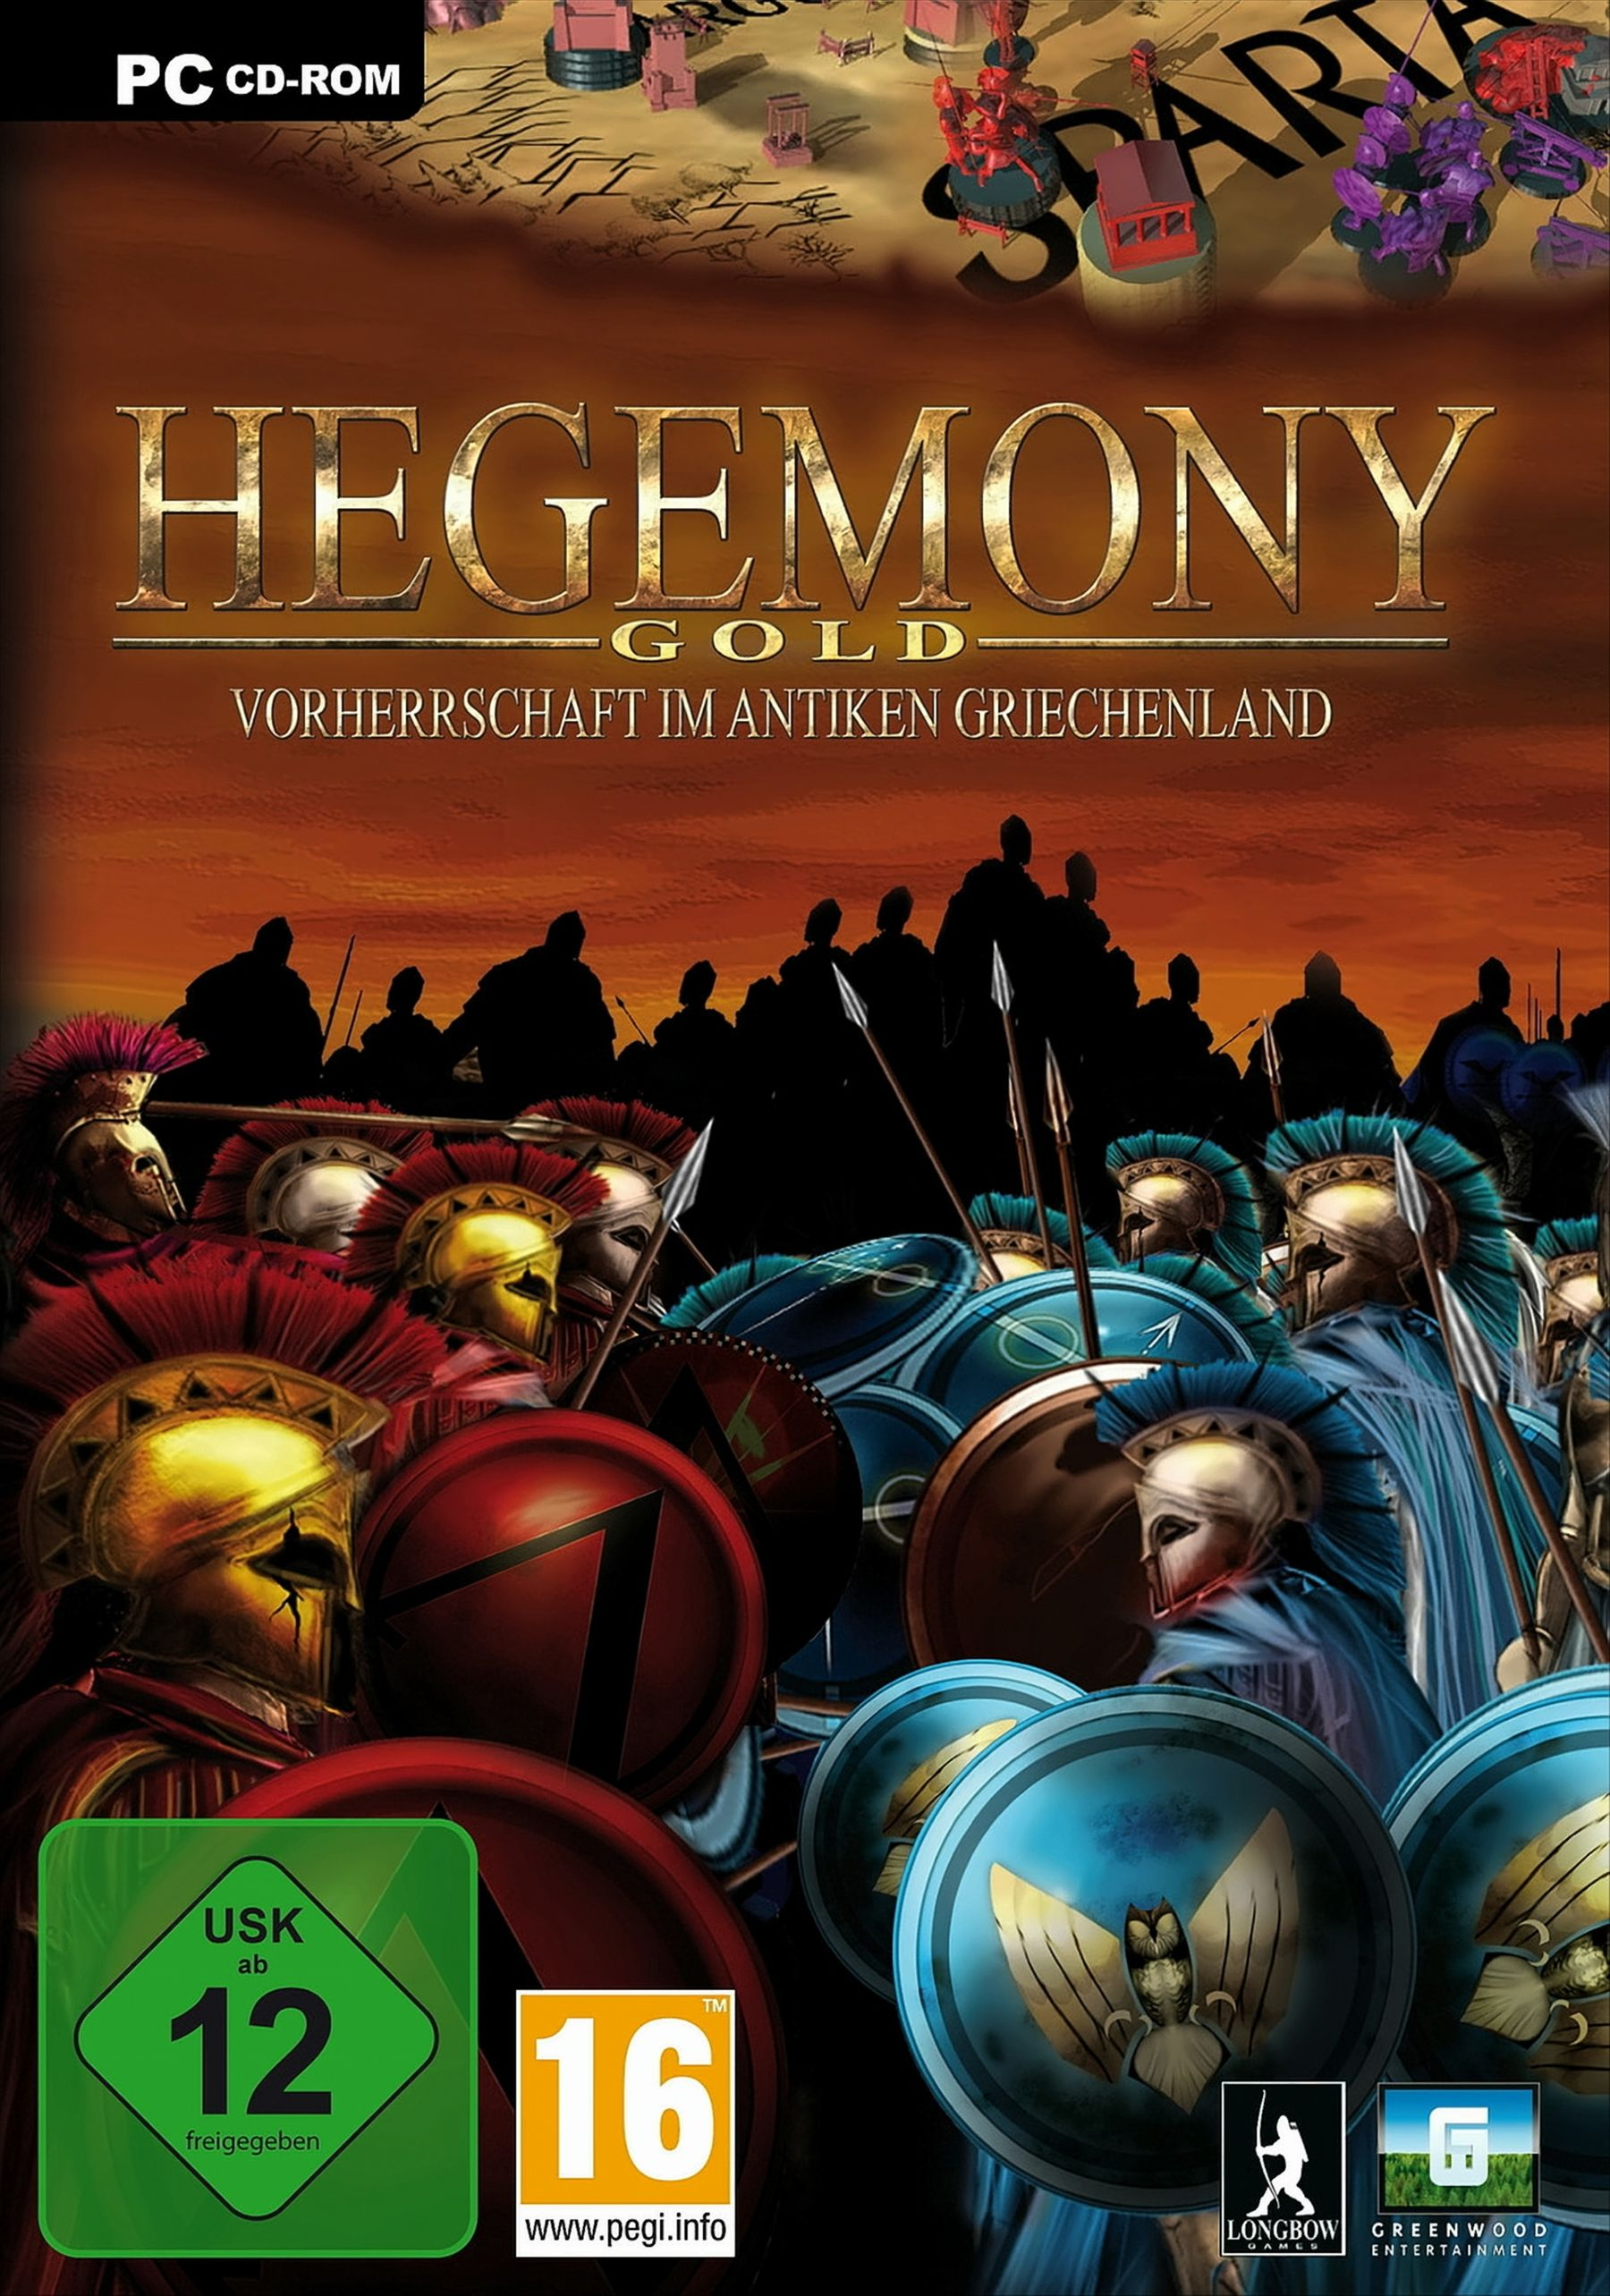 - [PC] im Gold Hegemony Griechenland Vorherrschaft antiken -